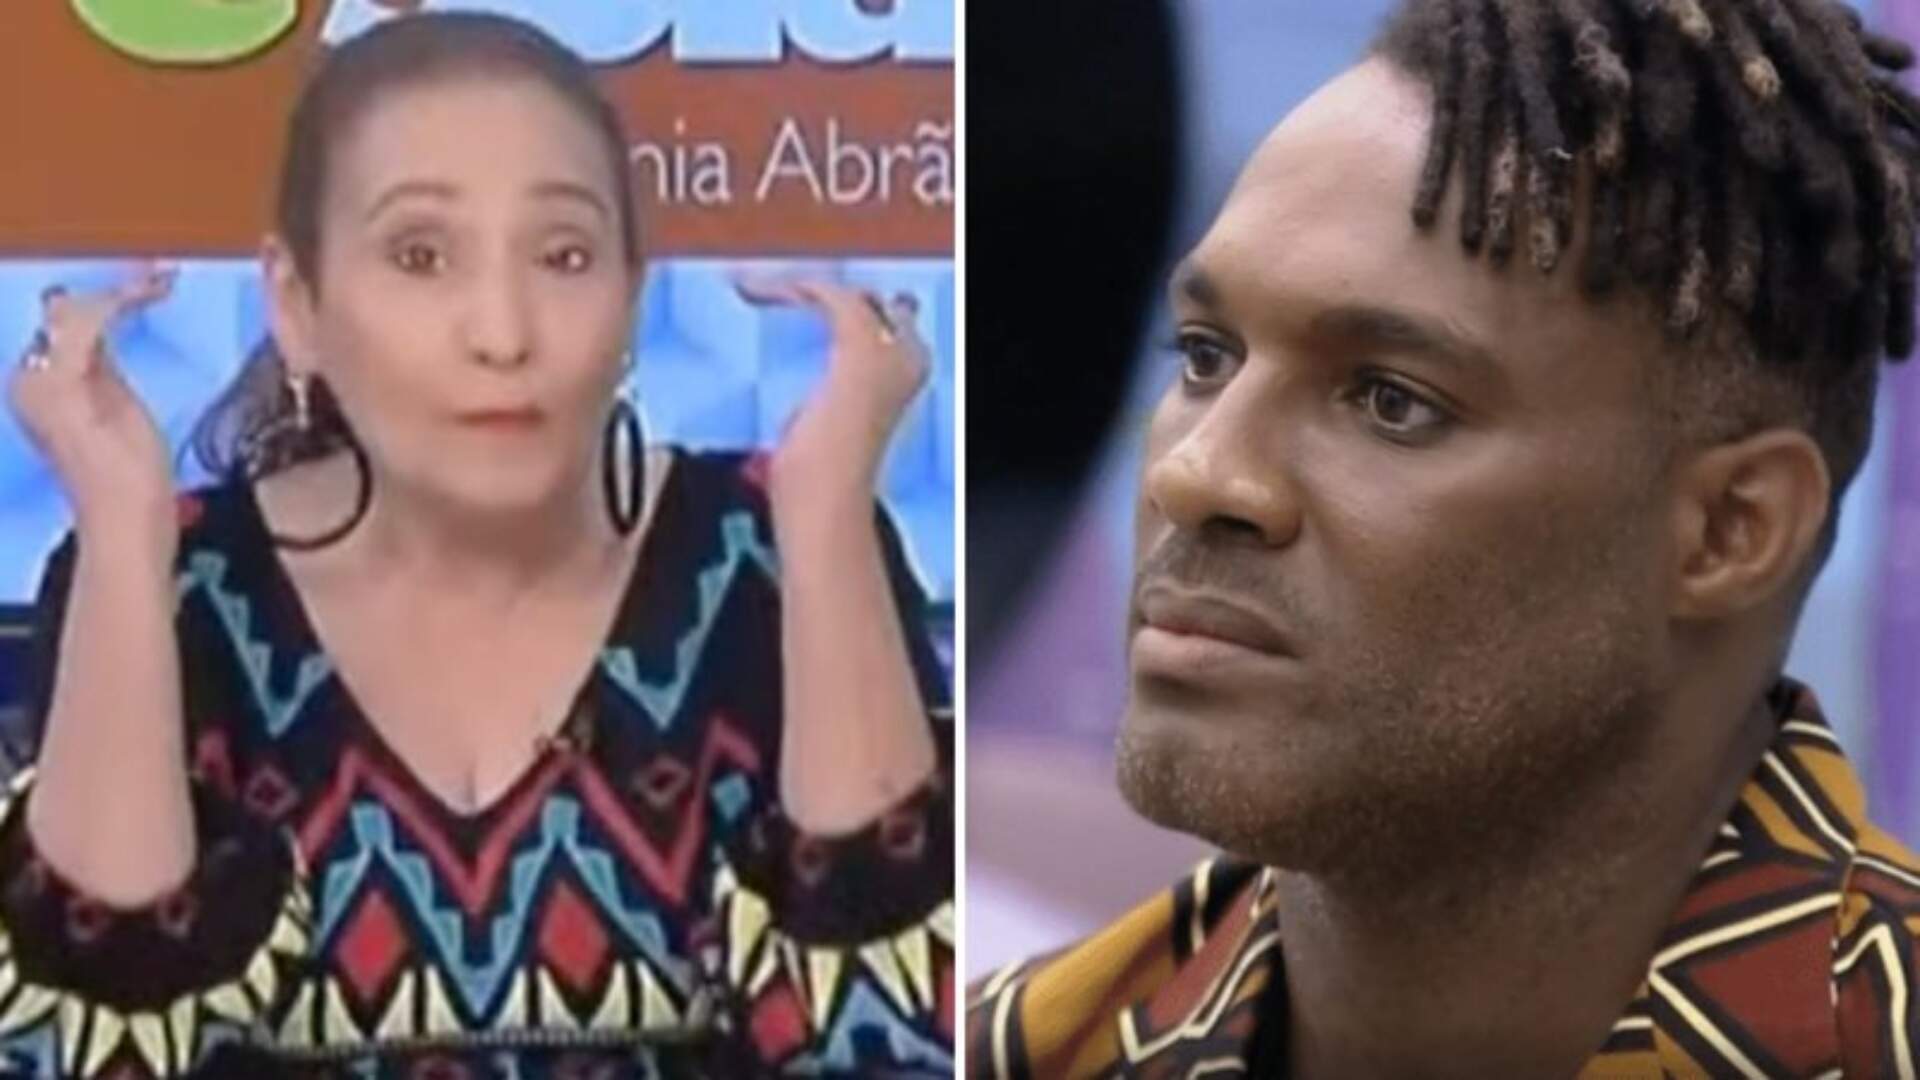 BBB 23: Sonia Abrão rasga o verbo sobre postura de Fred Nicácio e faz acusação: “Tóxico” - Metropolitana FM